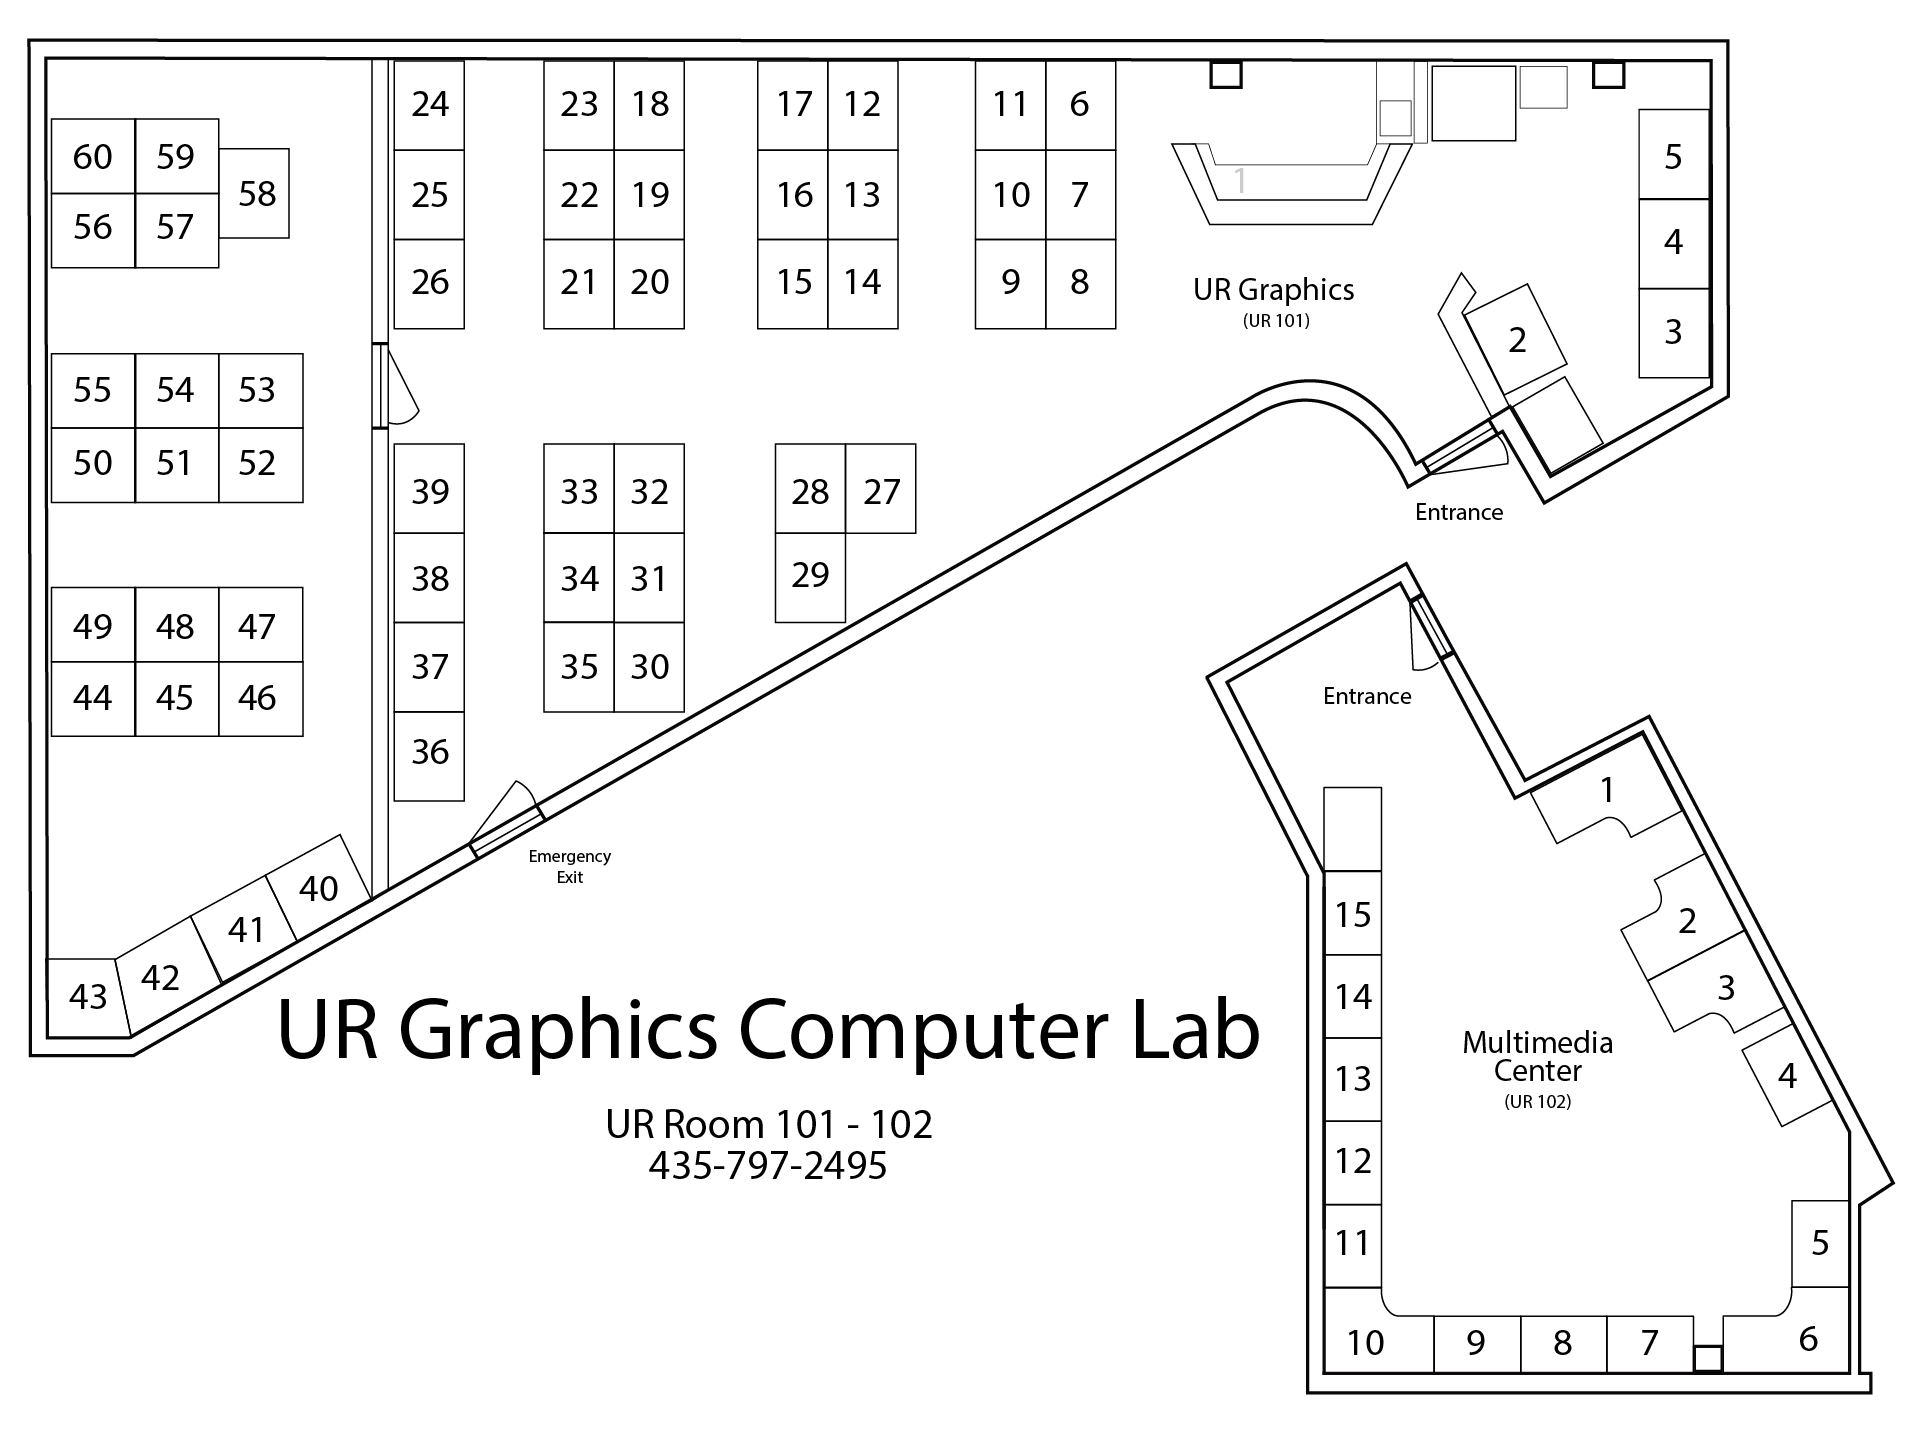 UR Graphics lab map